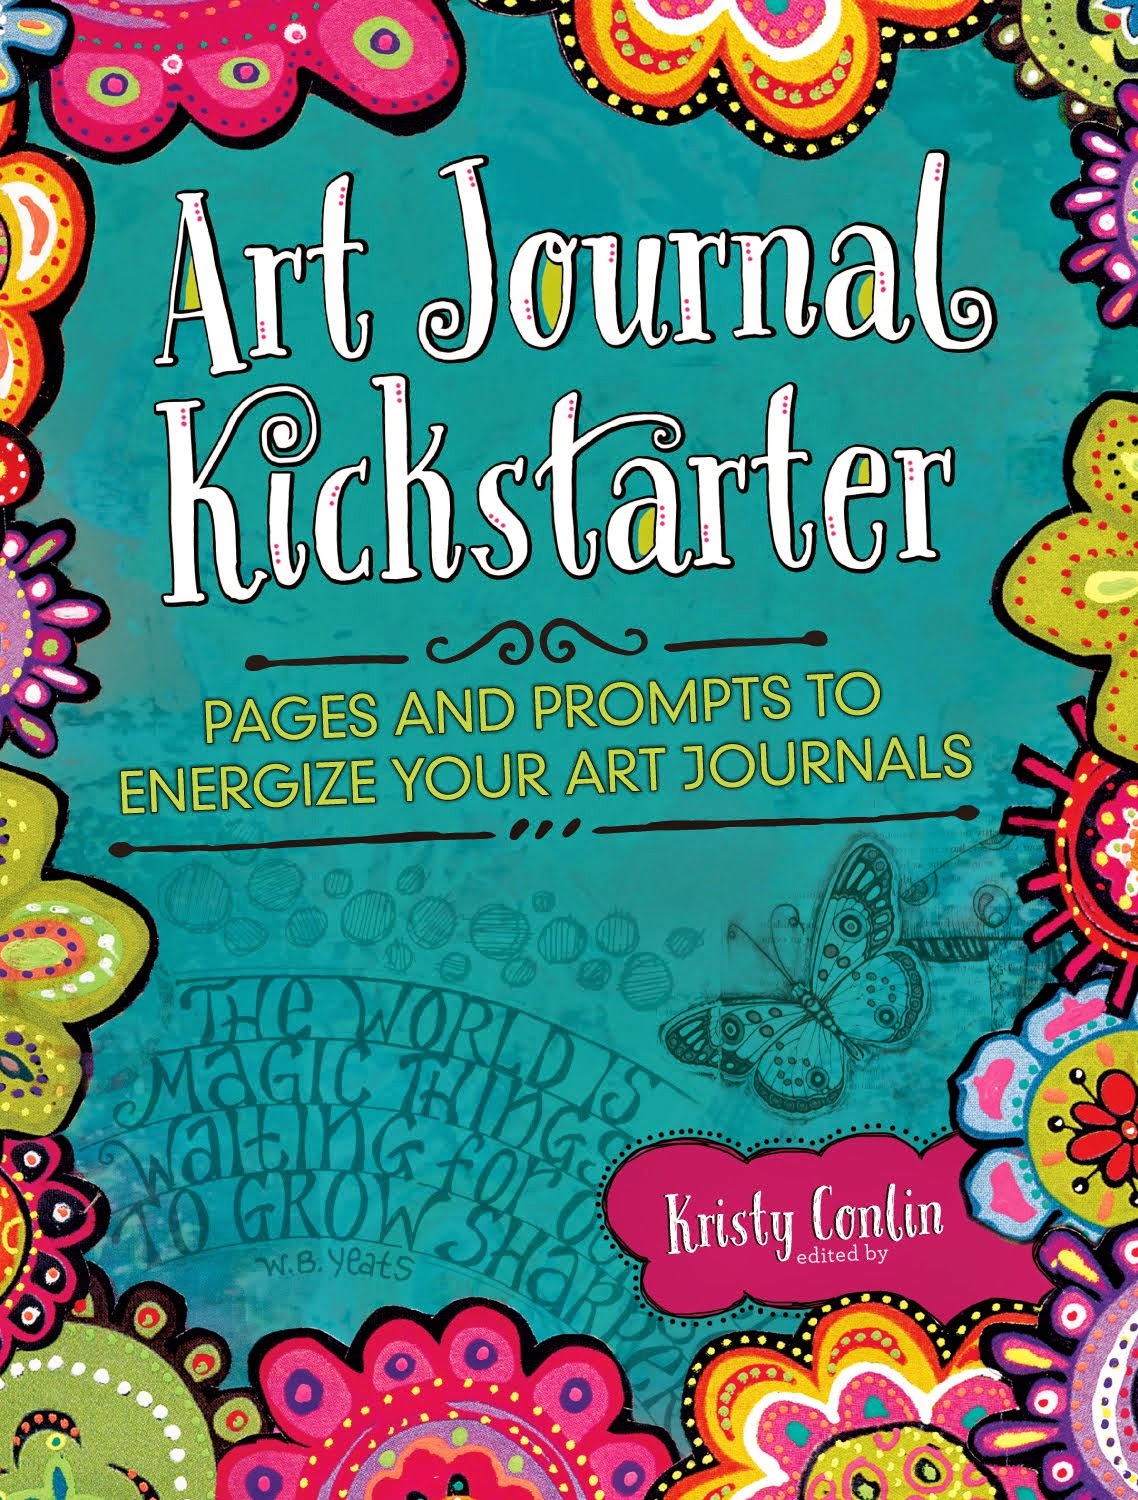 "Art Journal Kickstarter"